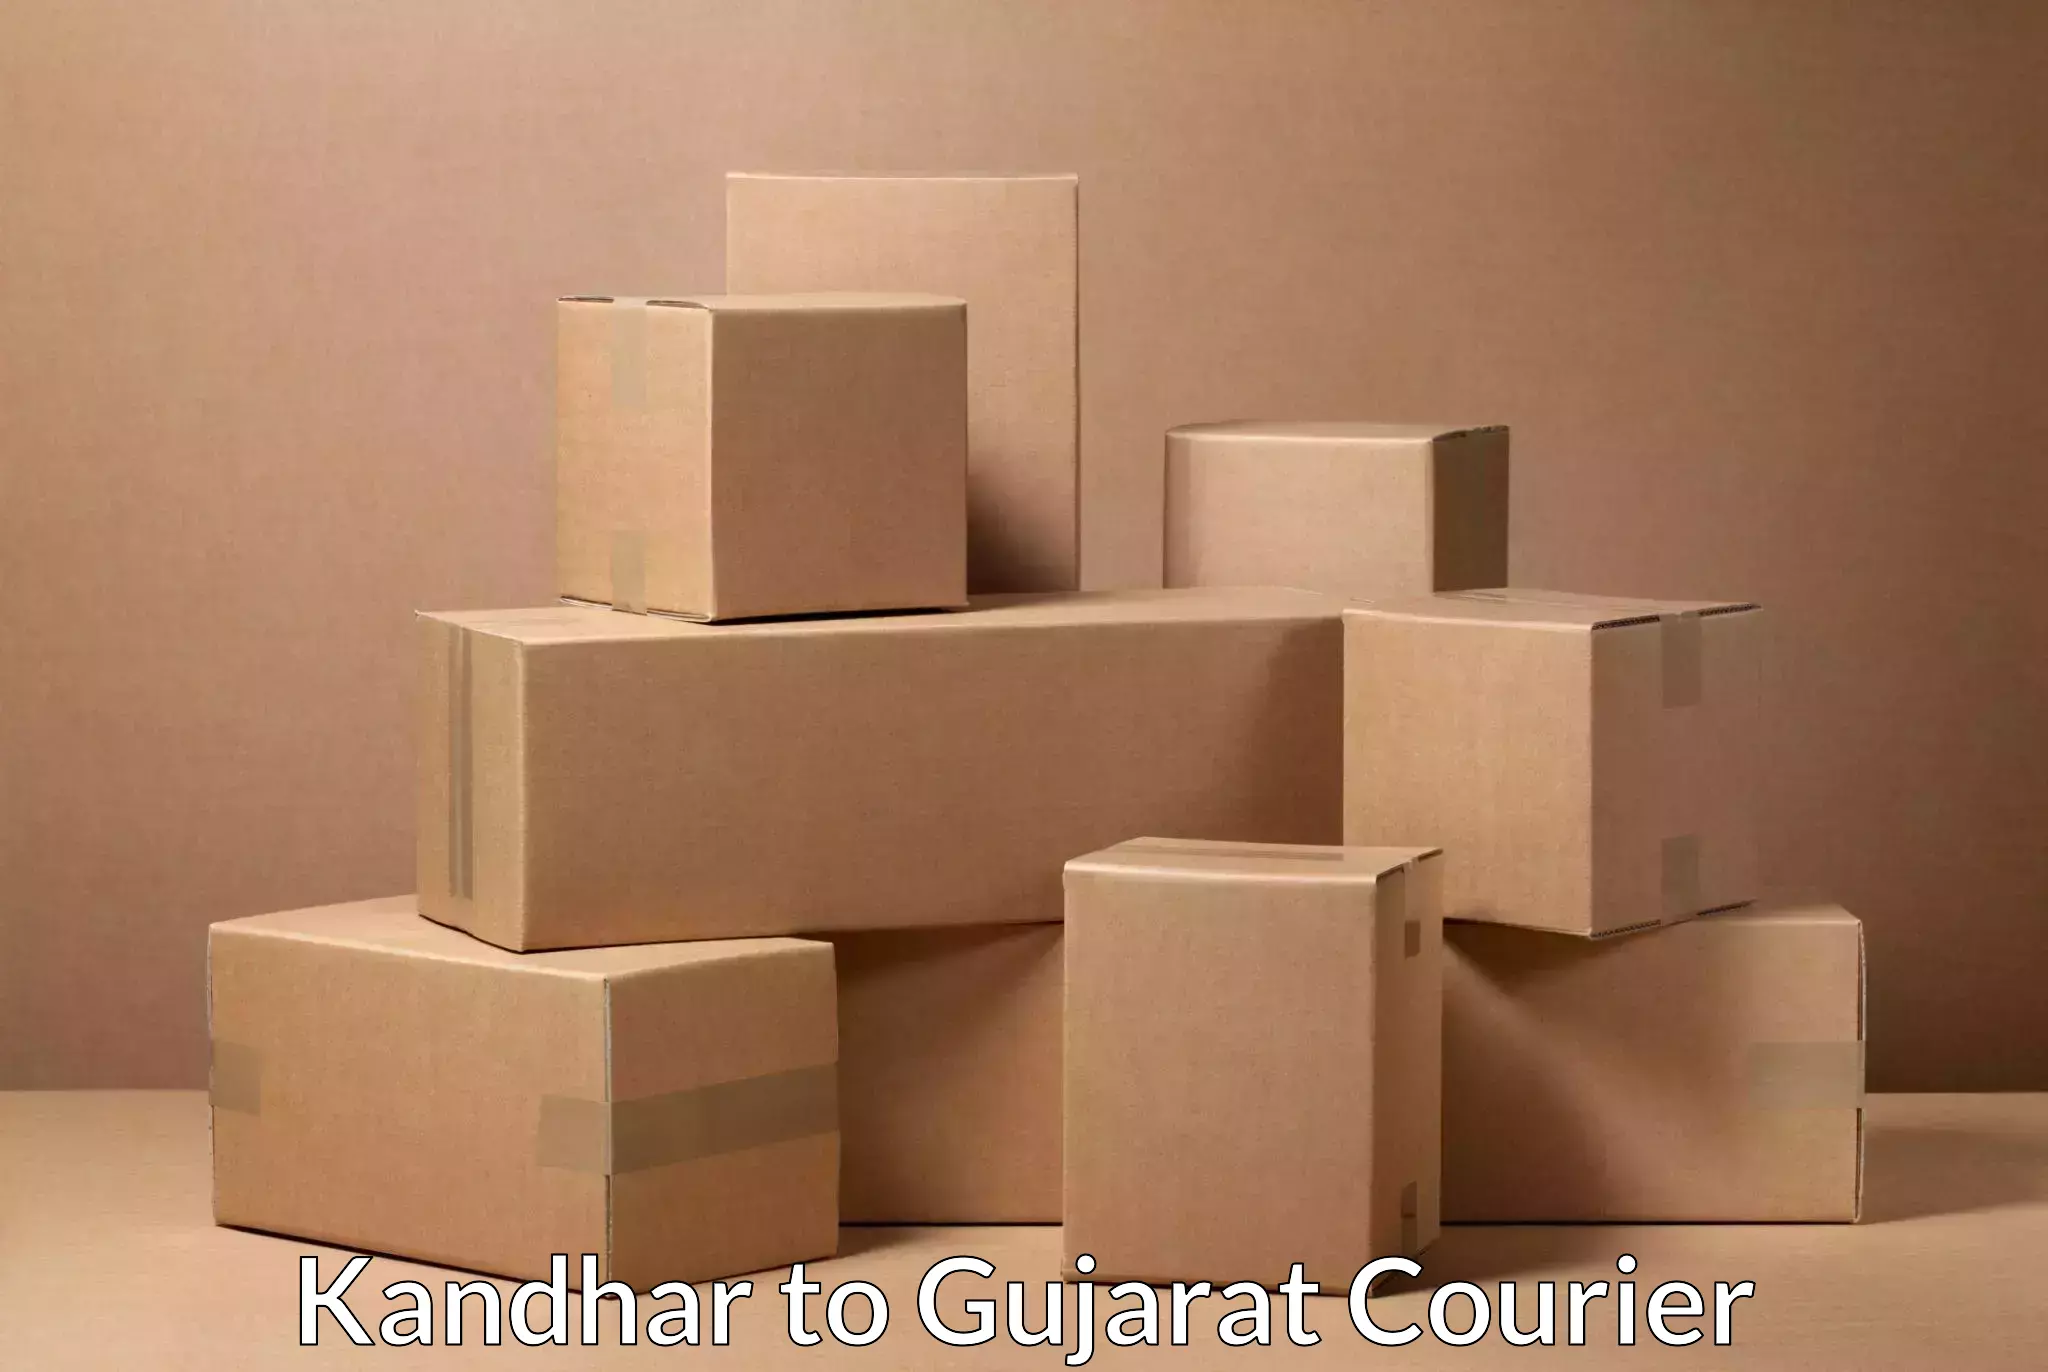 Expedited shipping methods Kandhar to Patan Gujarat